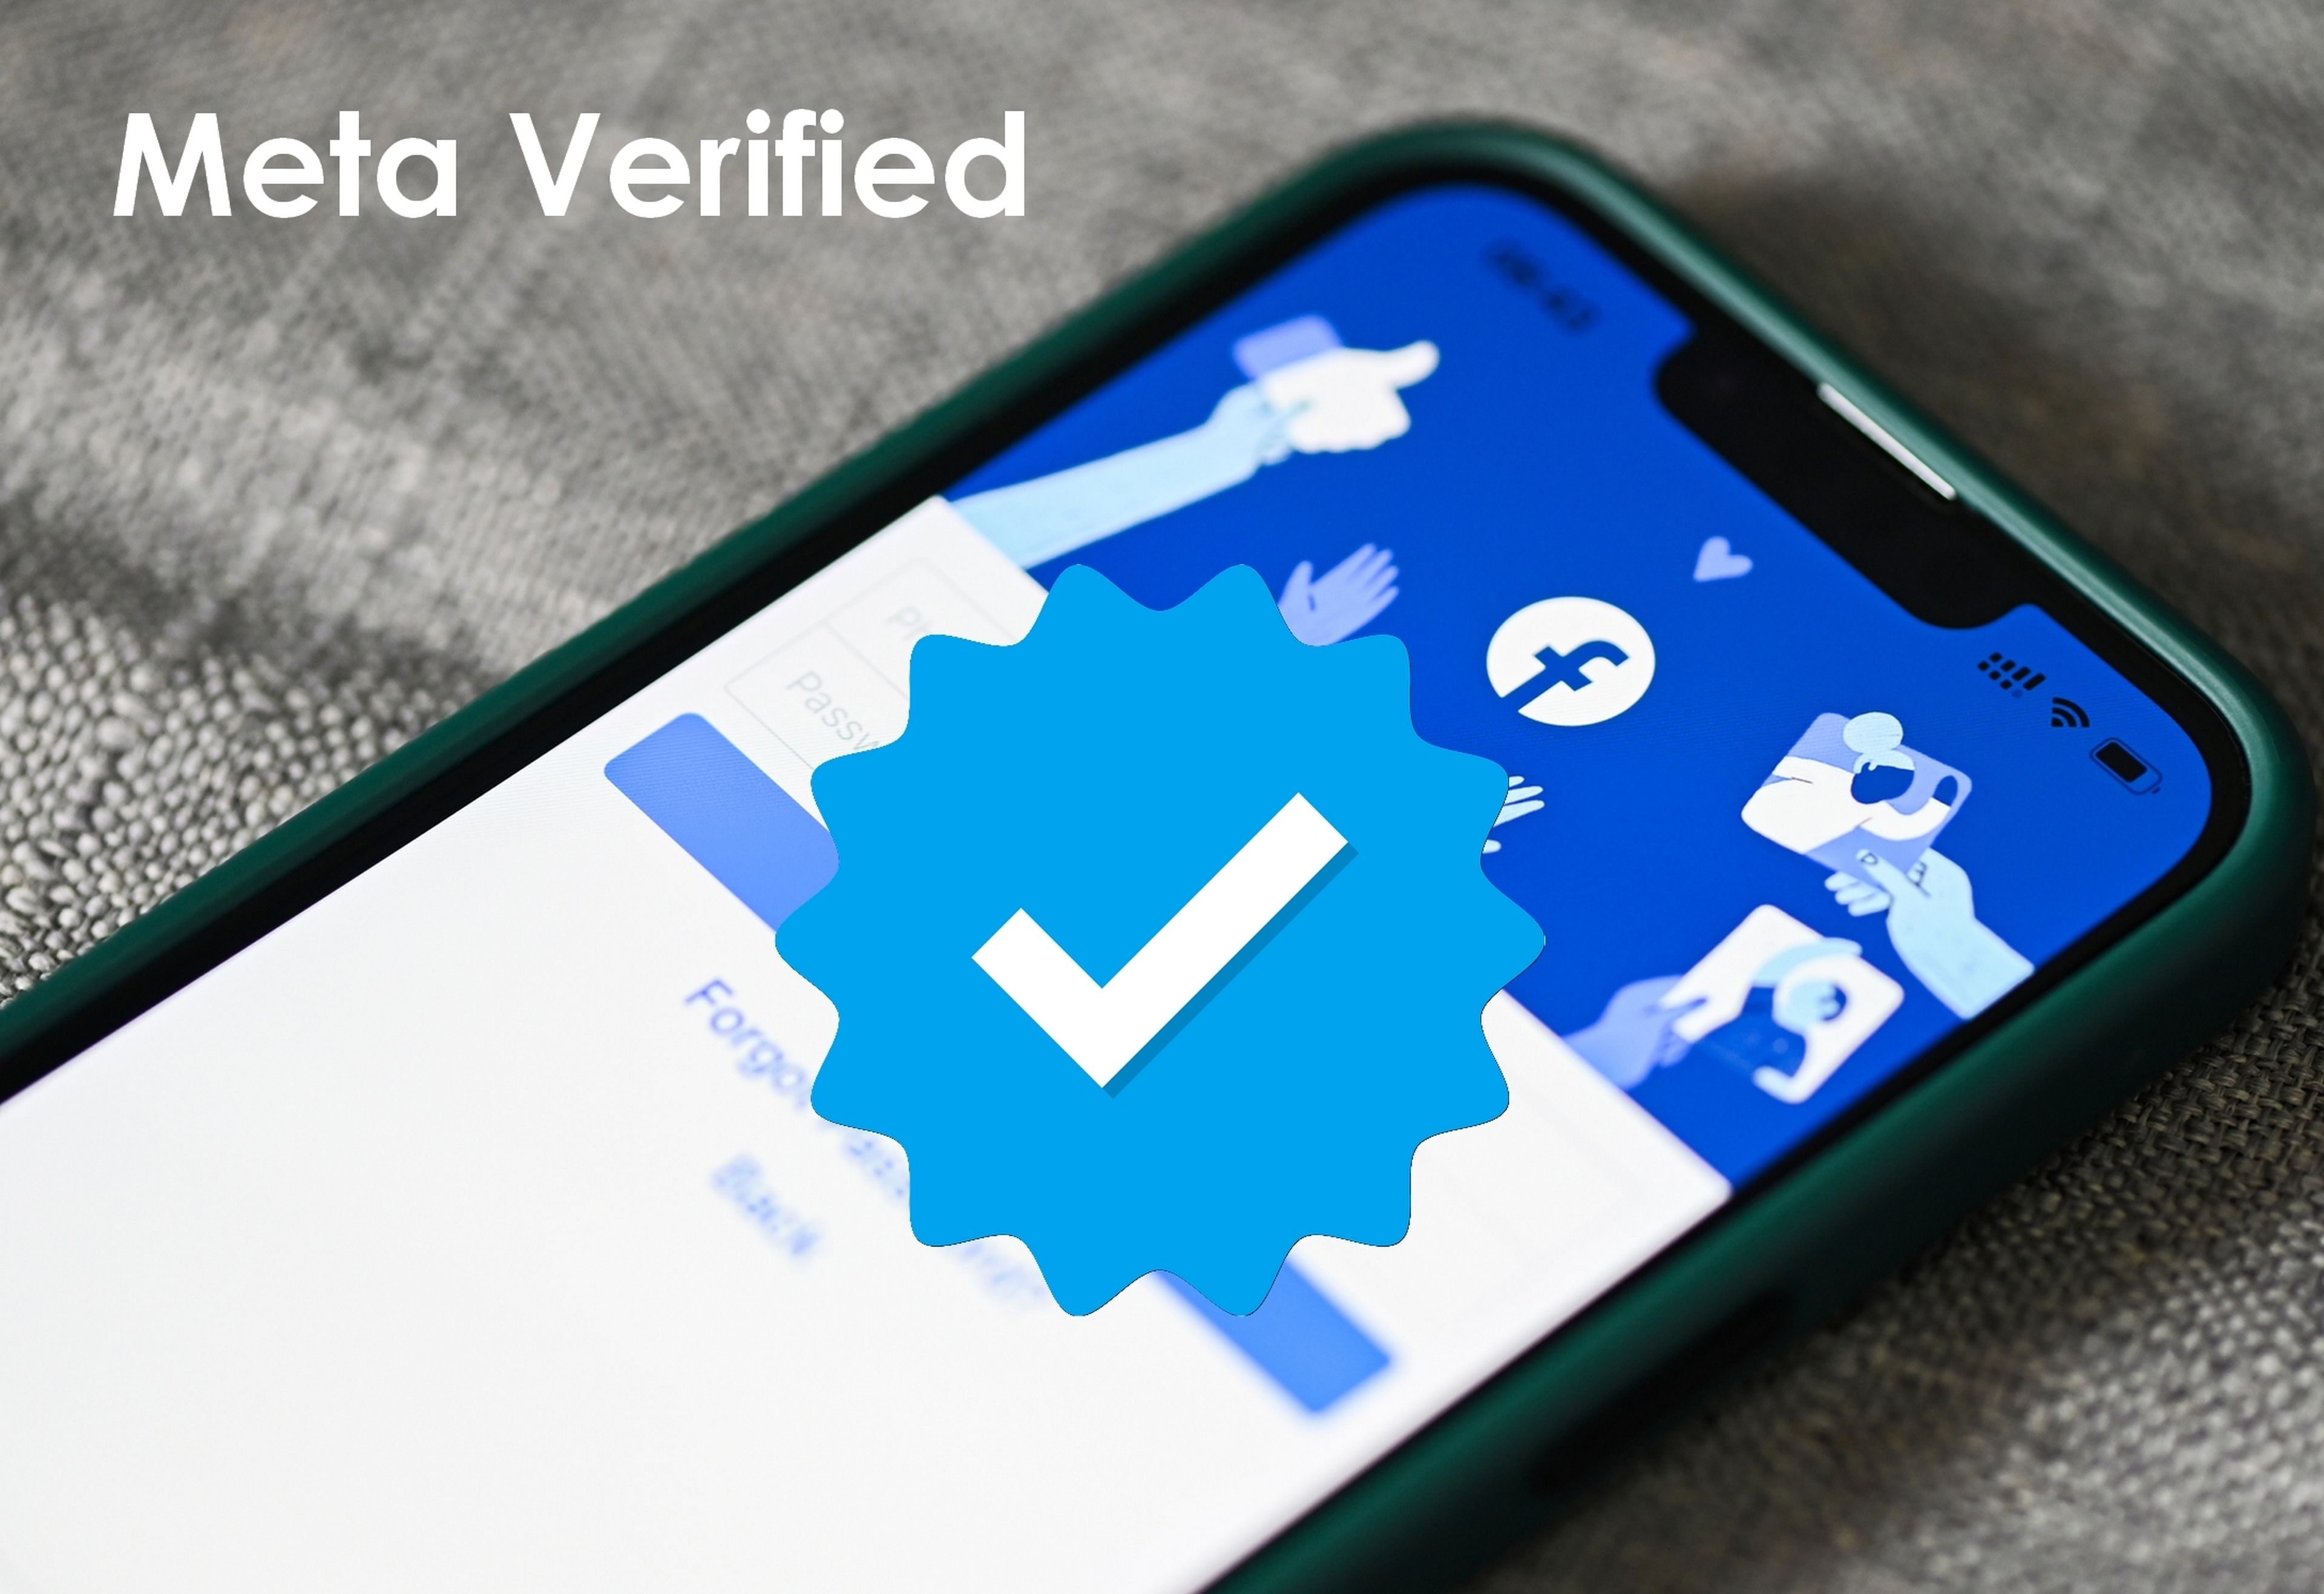 Meta imita a Twitter y lanza la suscripción Meta Verified, para añadir la marca azul a las cuentas de Instagram y Facebook